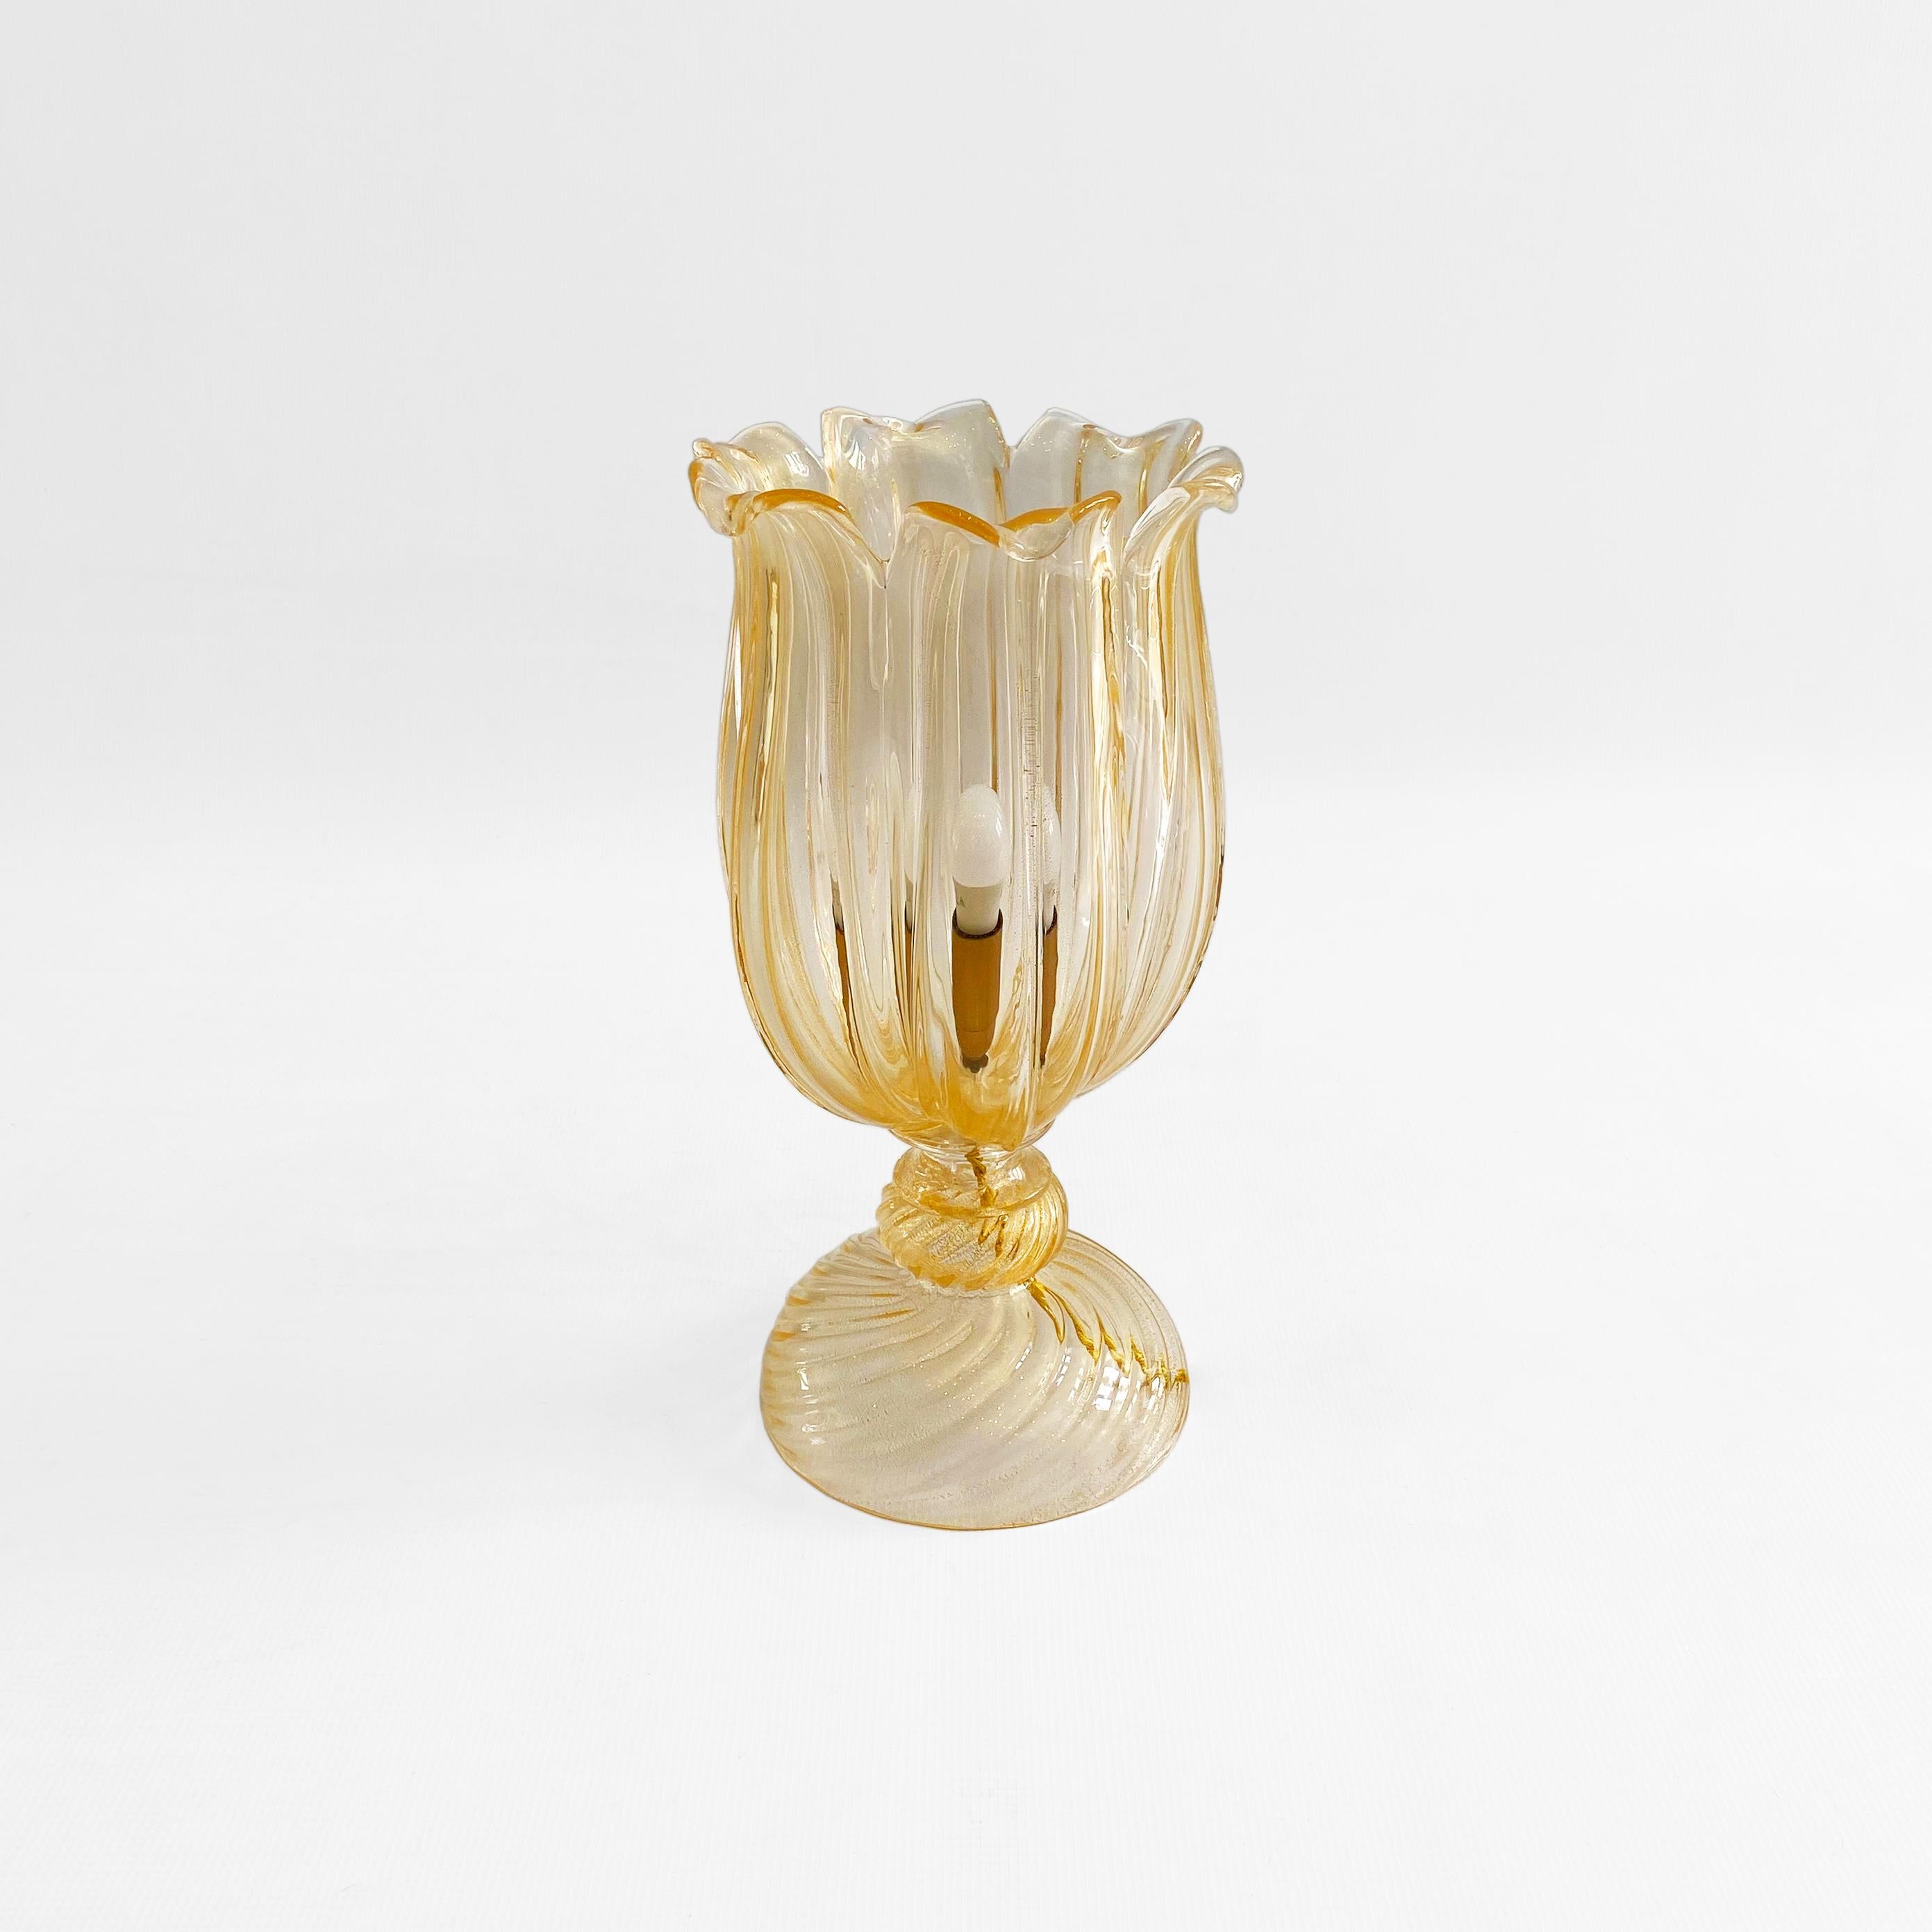 Une élégante lampe de table italienne du maître du verre de Murano Archimede Seguso, importée de son premier propriétaire à Venise. 

La lampe est soufflée à la main de façon magistrale avec des paillettes d'or 24k dans le verre fondu, ce qui lui